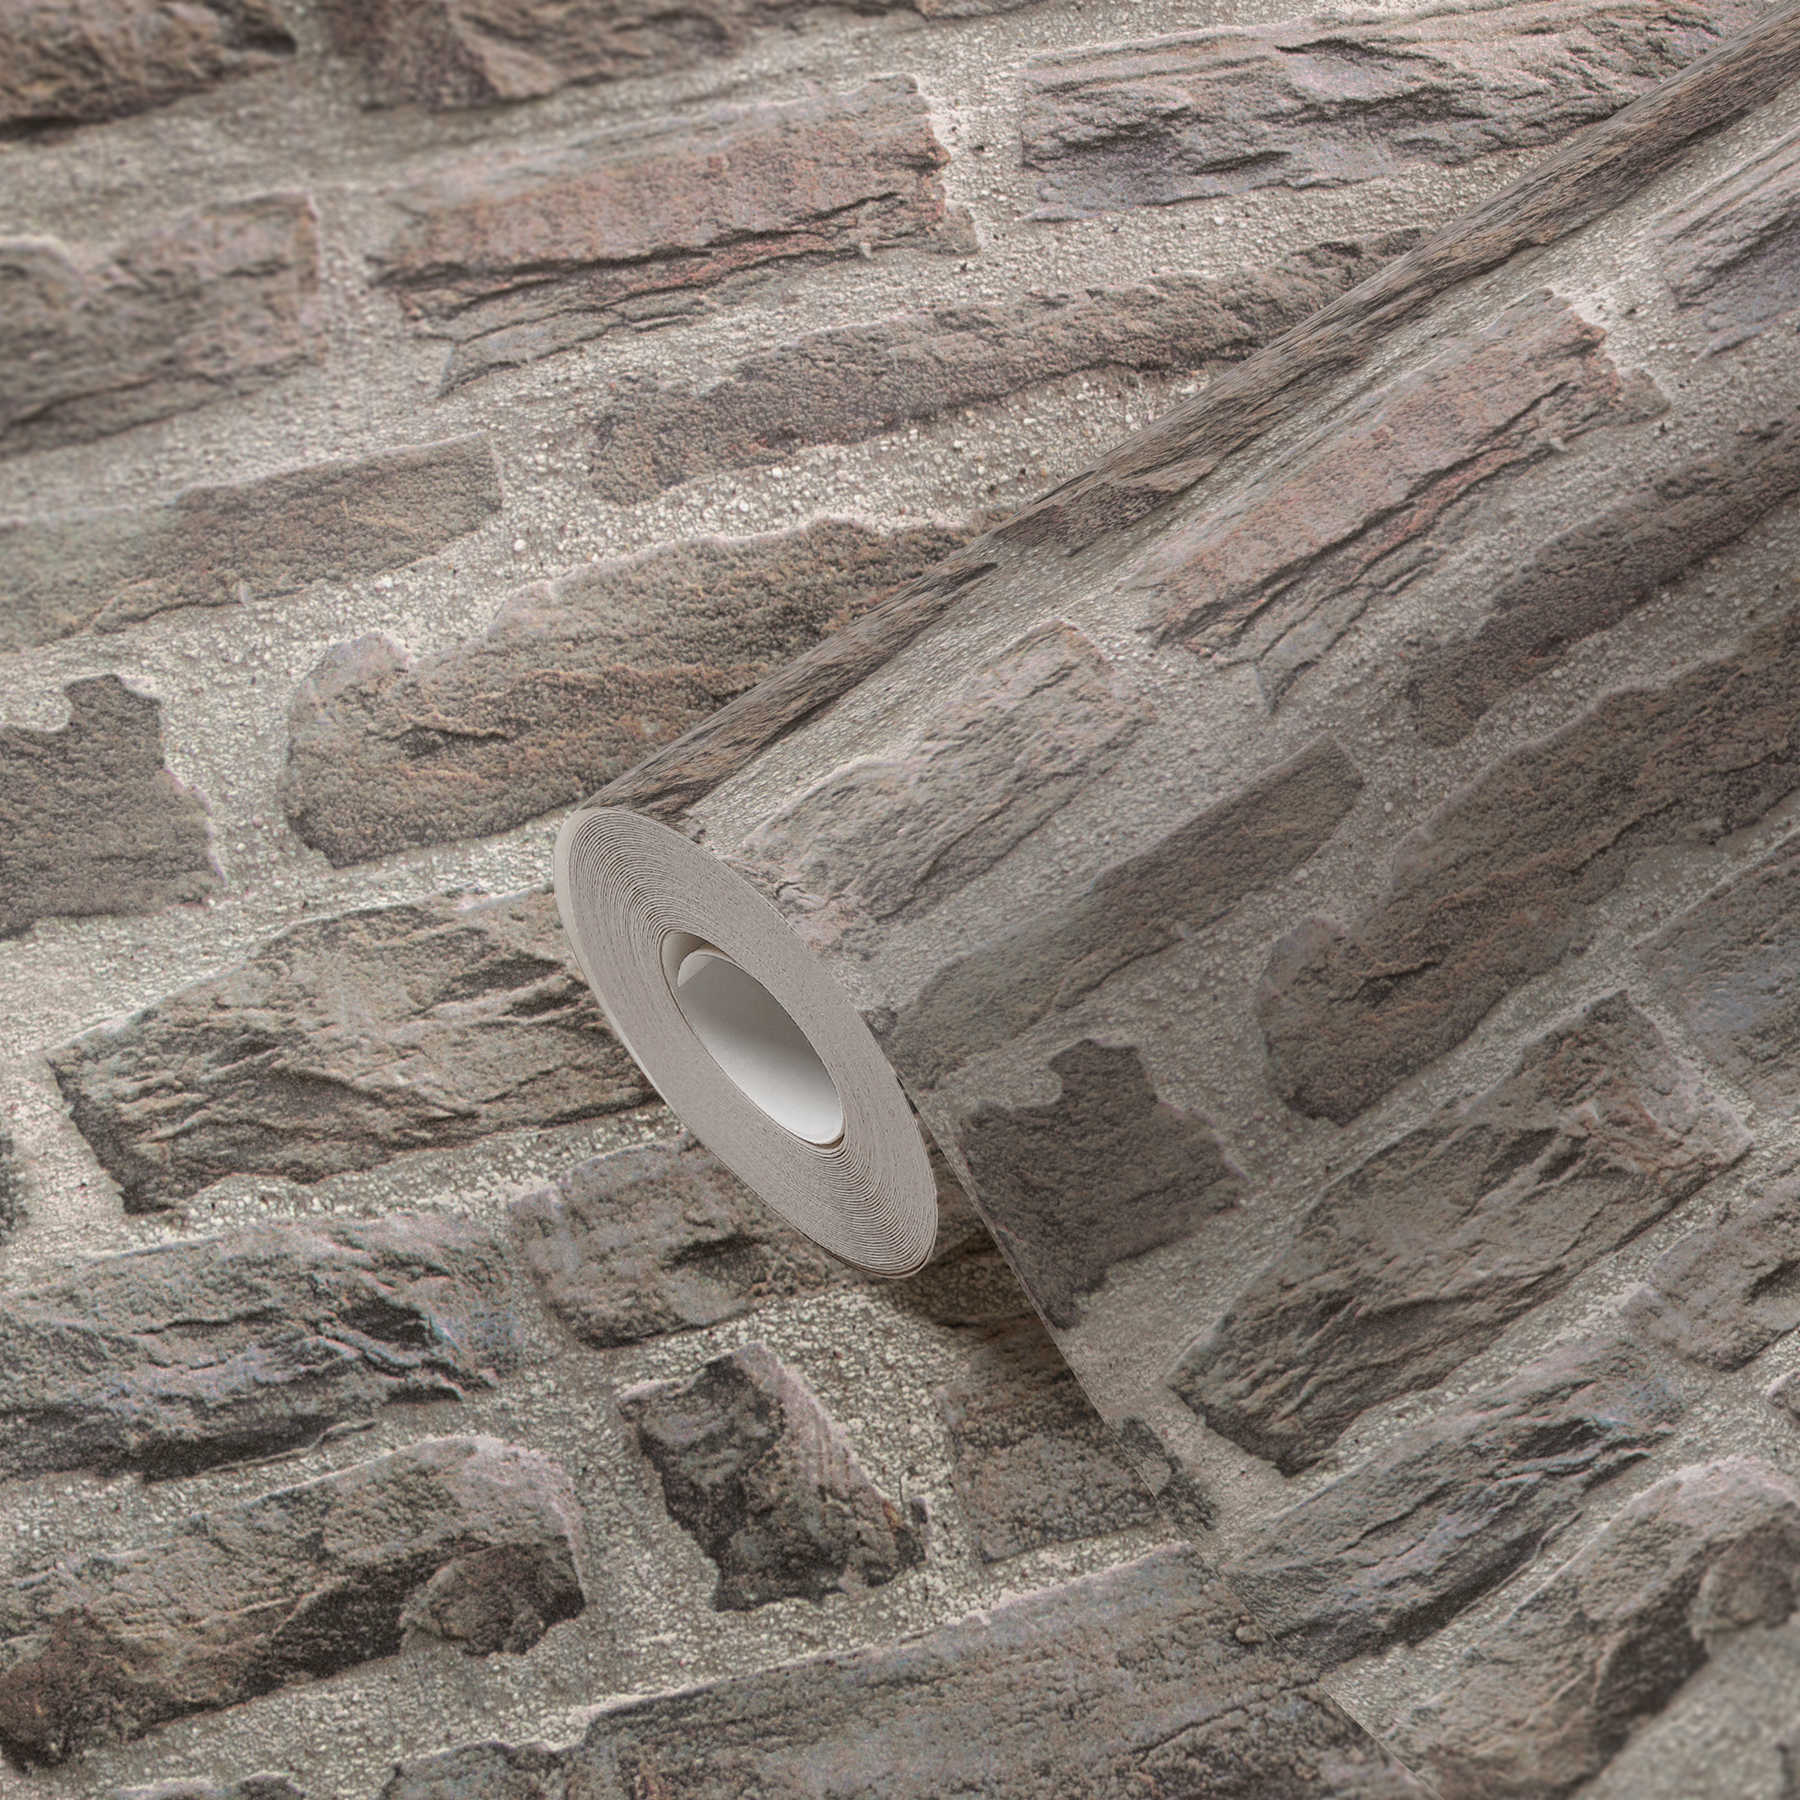             Natuursteenbehang met realistische muurlook - grijs, bruin
        